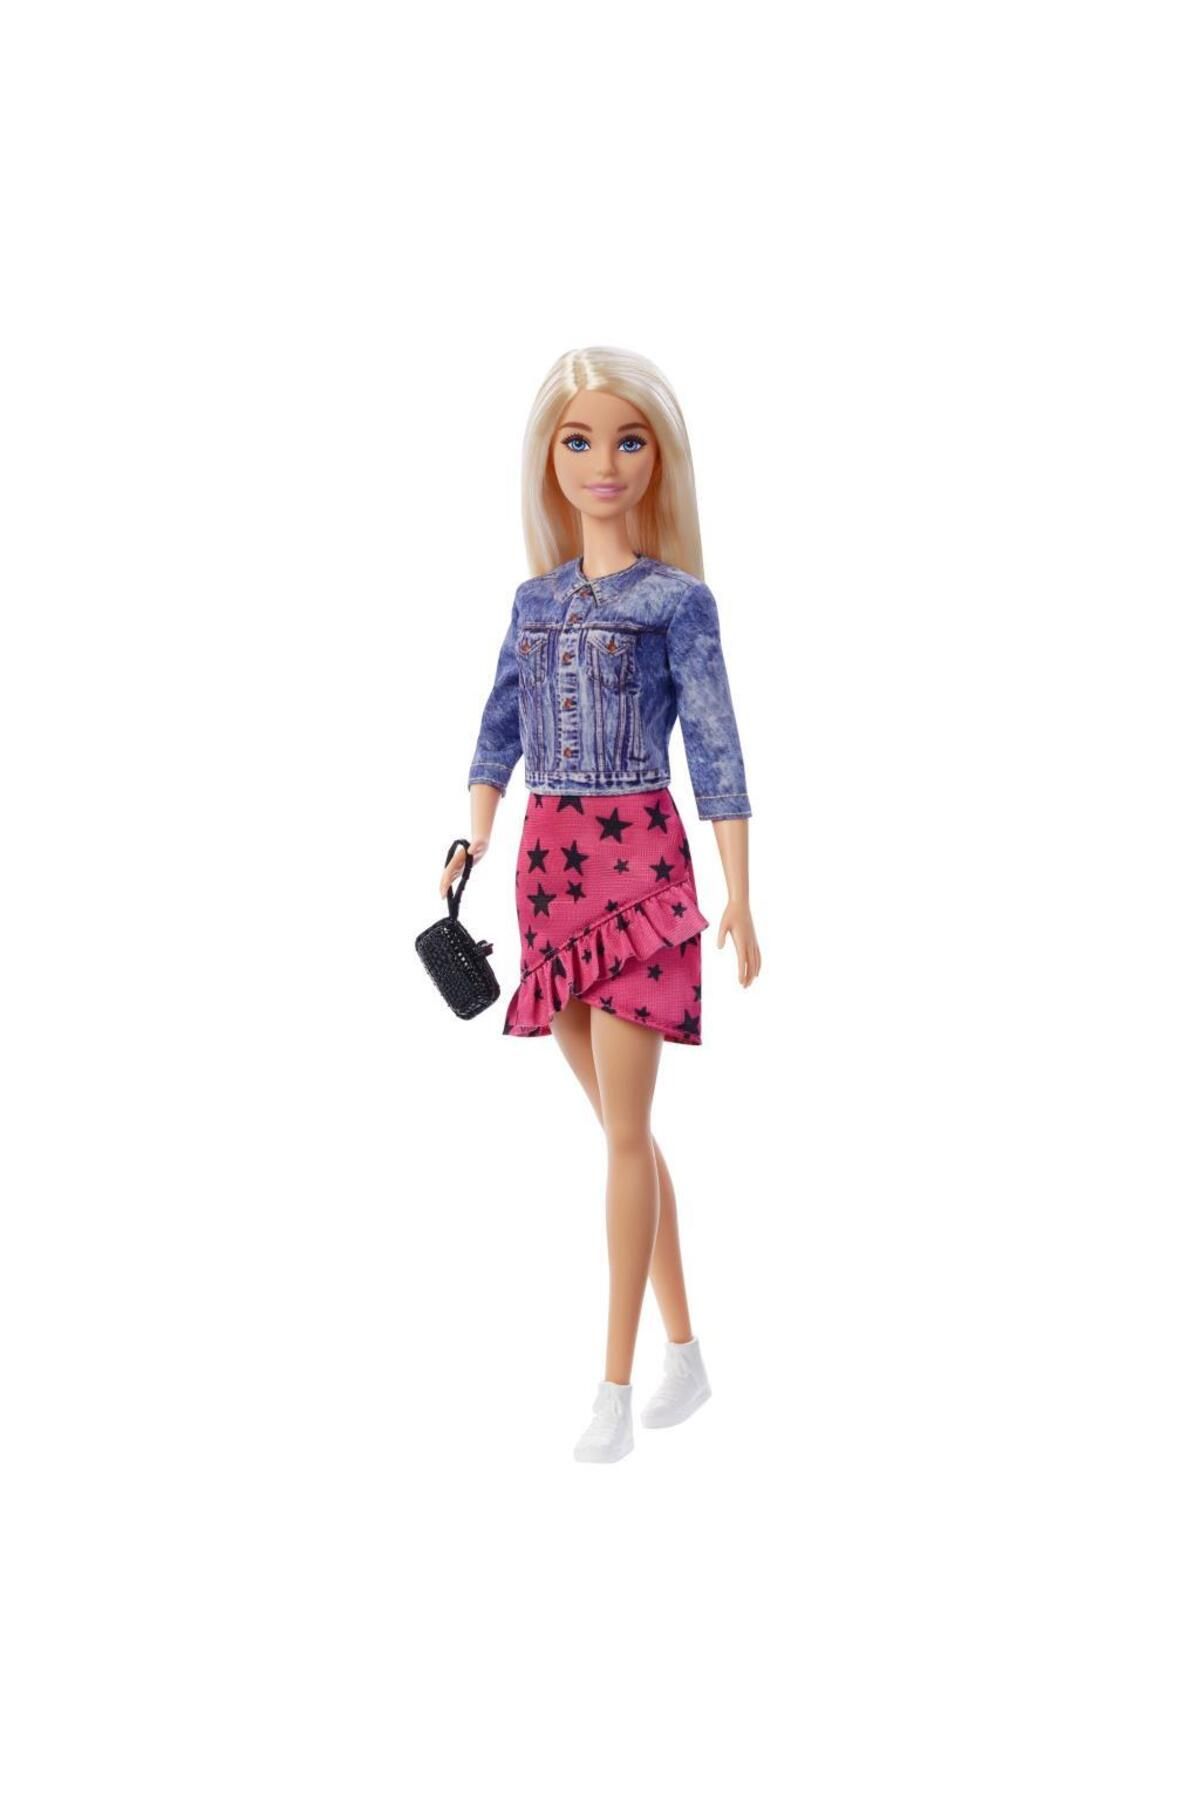 Barbie Büyük Şehir Büyük Hayaller Malibu Bebeği Gyj21-gxt03